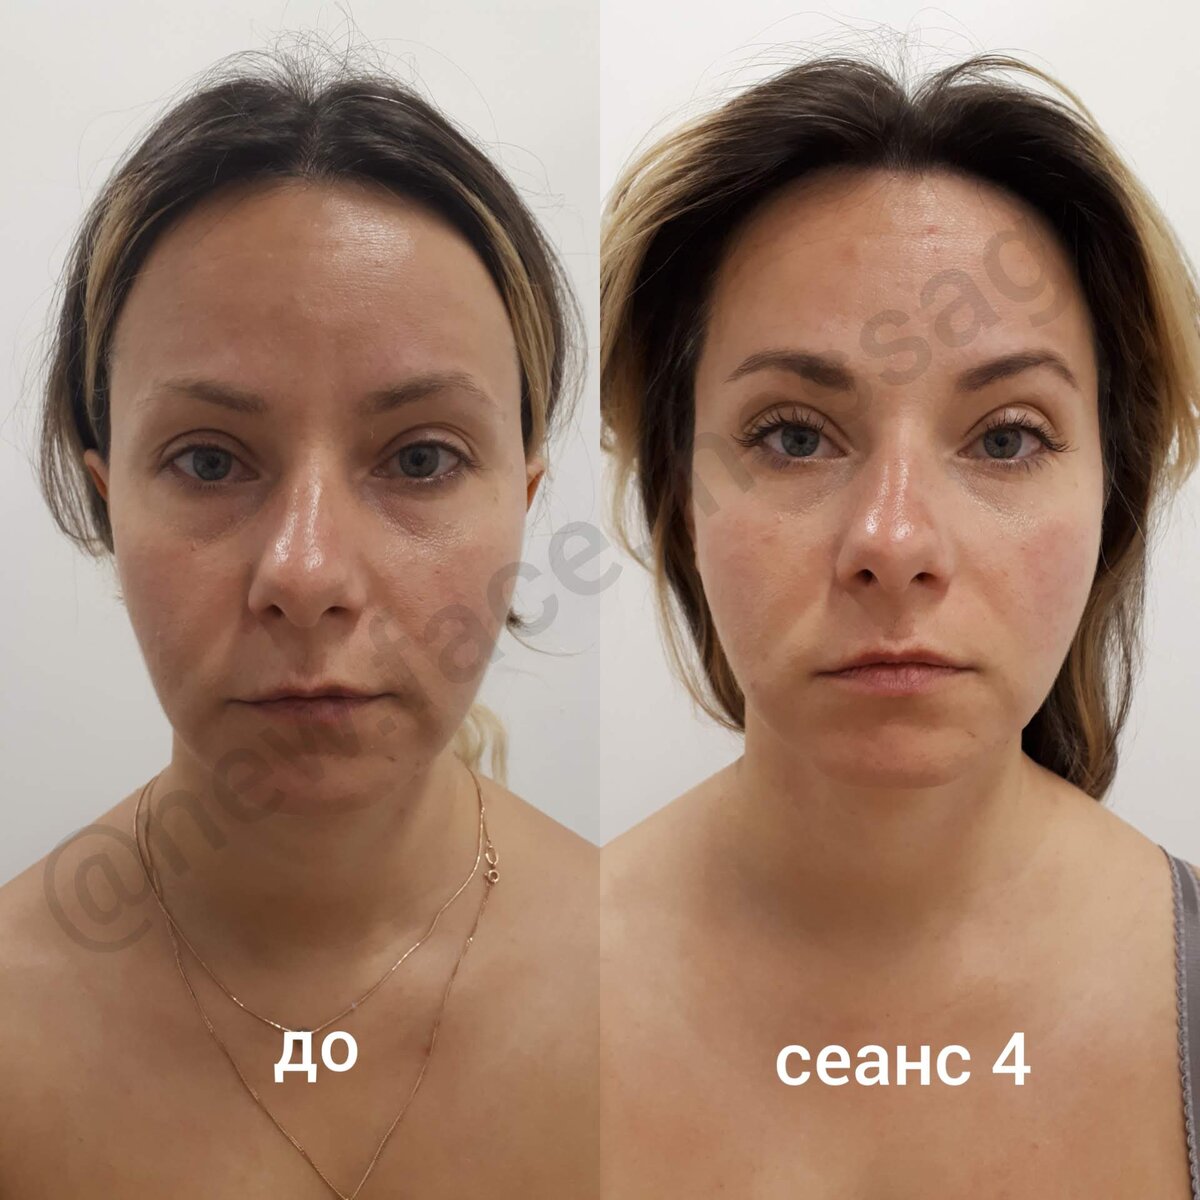 Lpg массаж лица в Кишиневе и Харькове, фото до и после, отзывы, цена |Honest Beauty